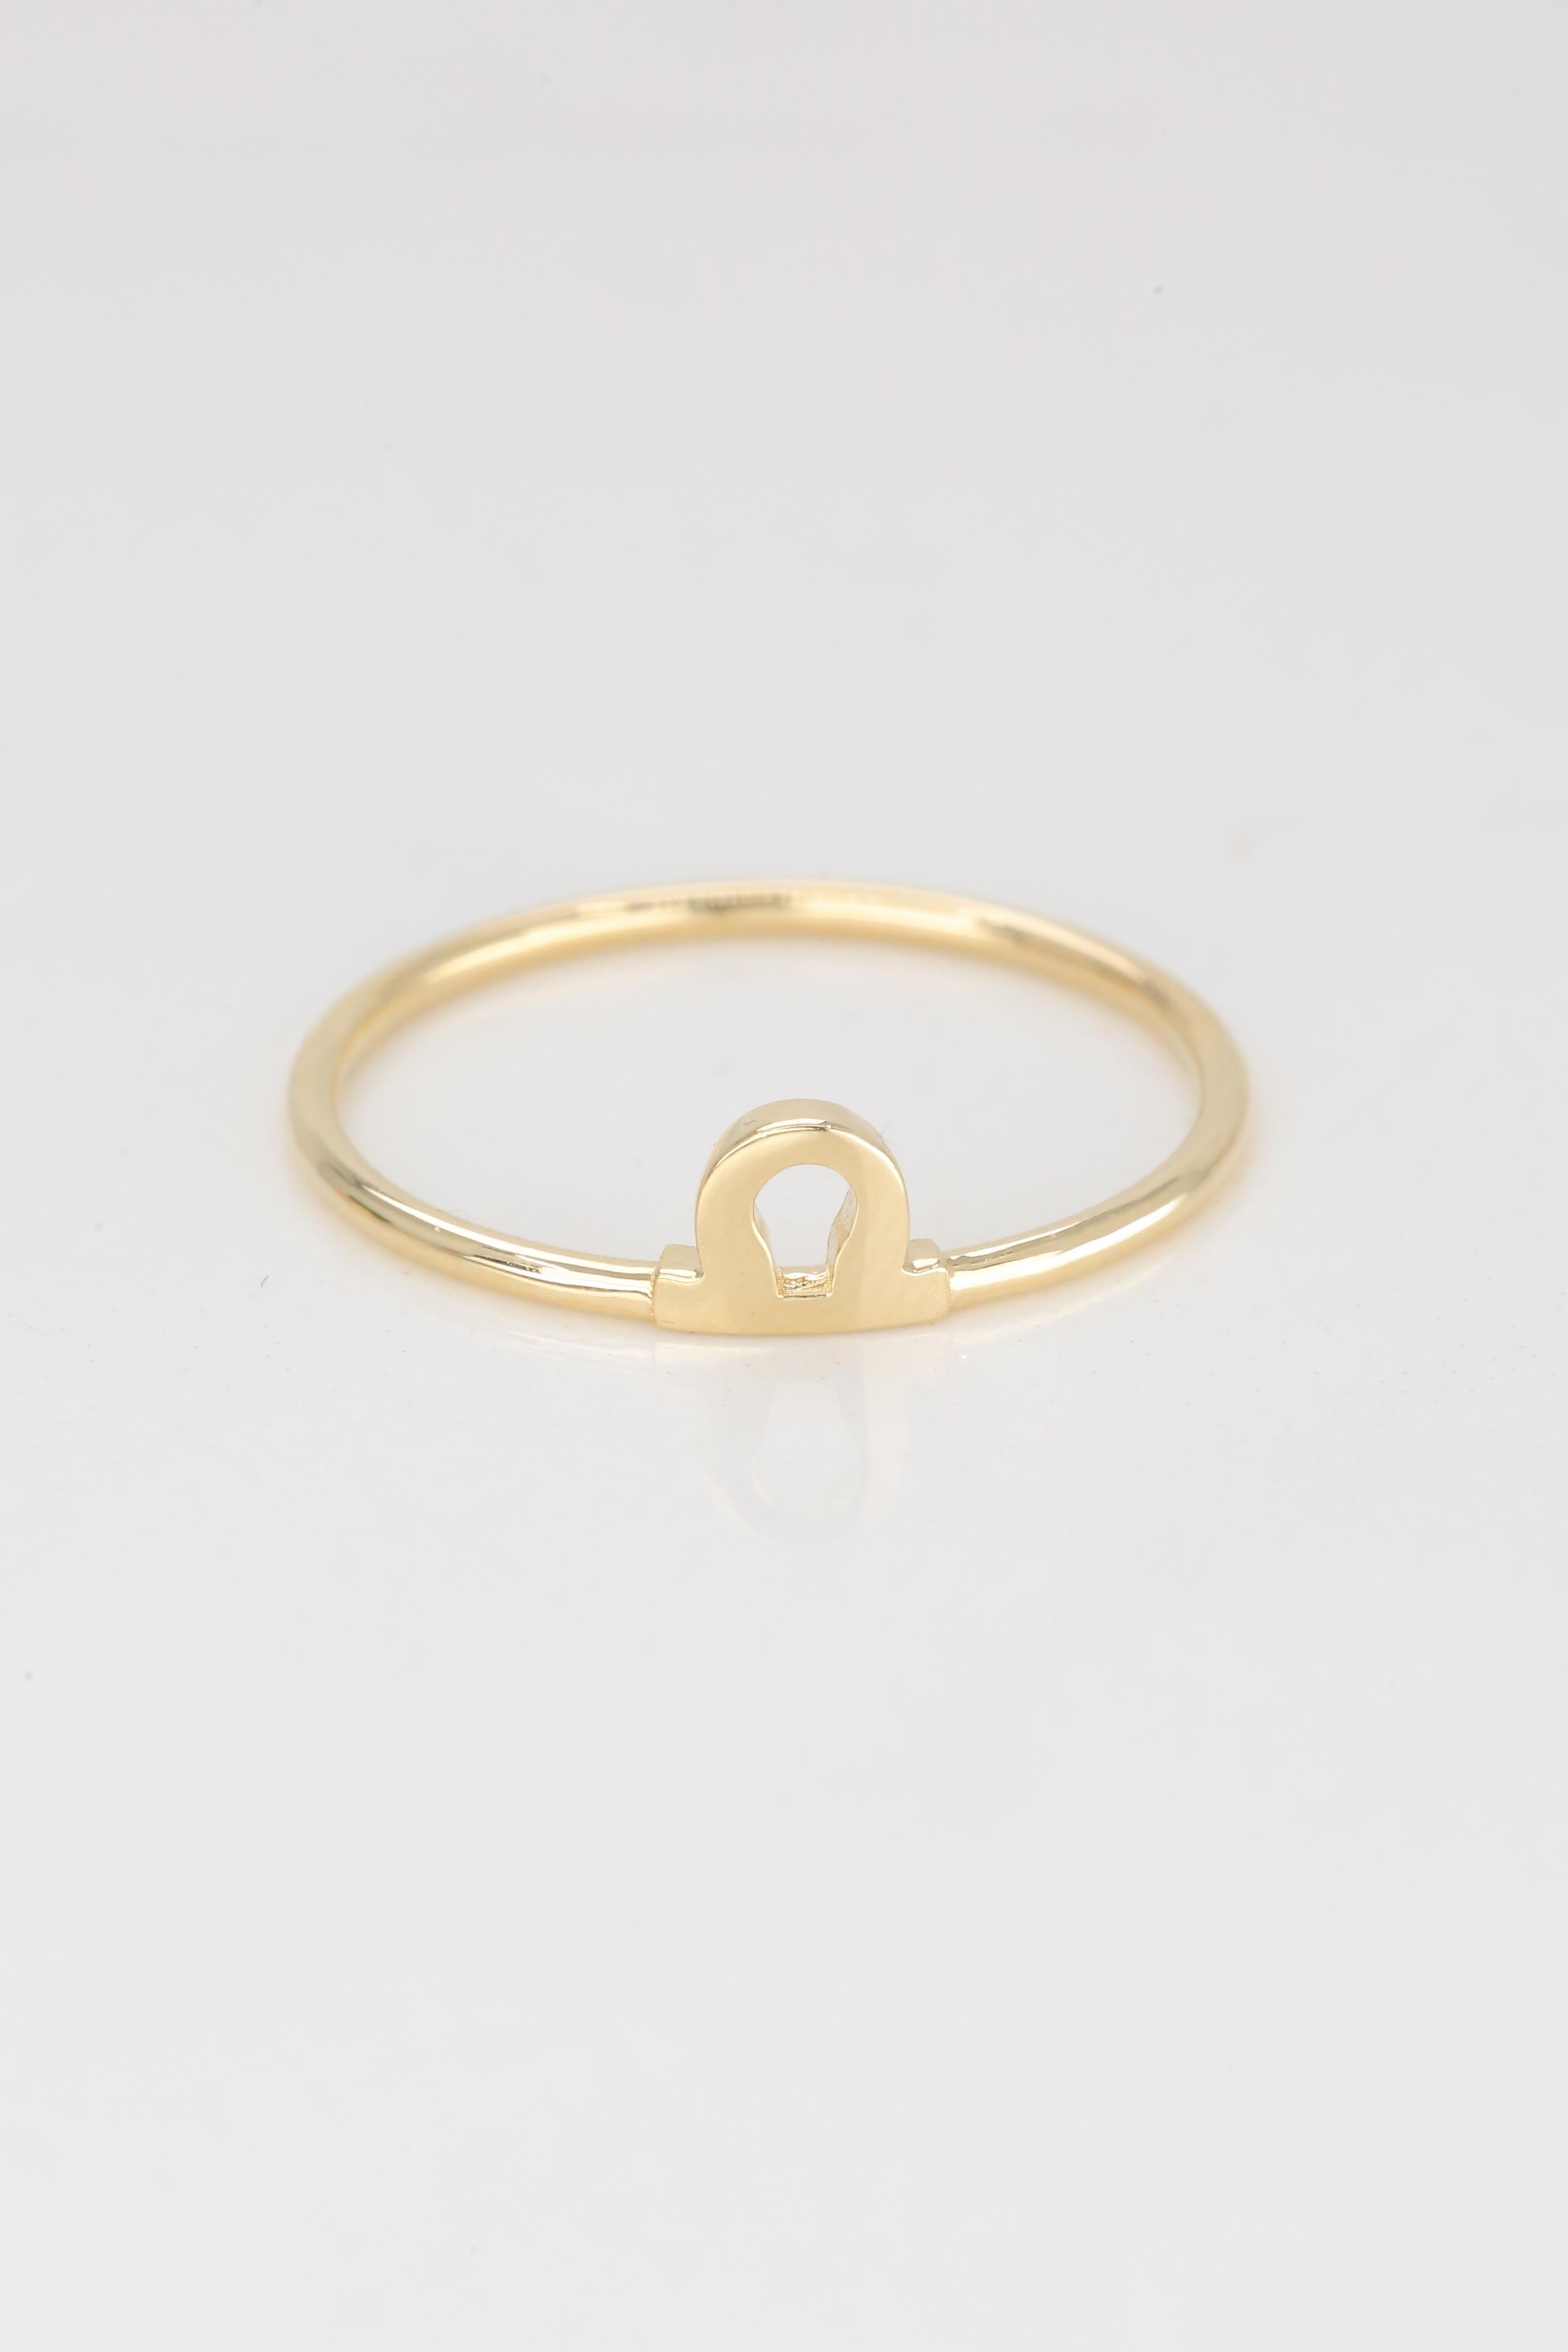 For Sale:  14K Gold Libra Zodiac Ring, Libra Sign Zodiac Ring 5